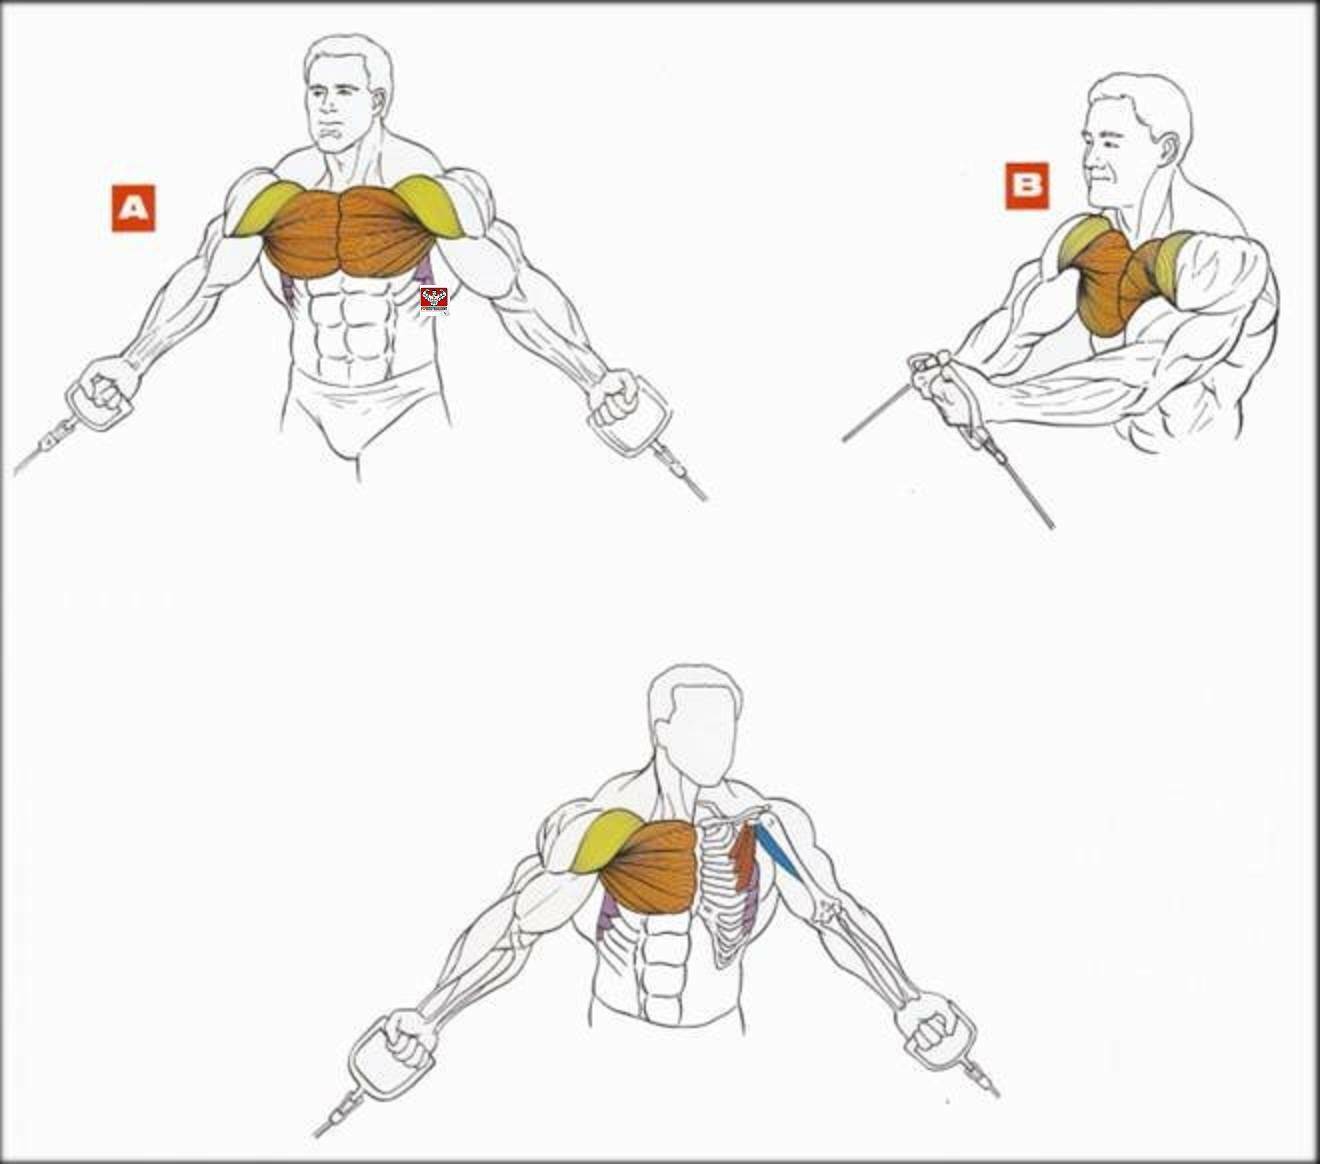 Как накачать мышцы без гантелей, тренажеров, железа, тренажерного зала, штанг и весов